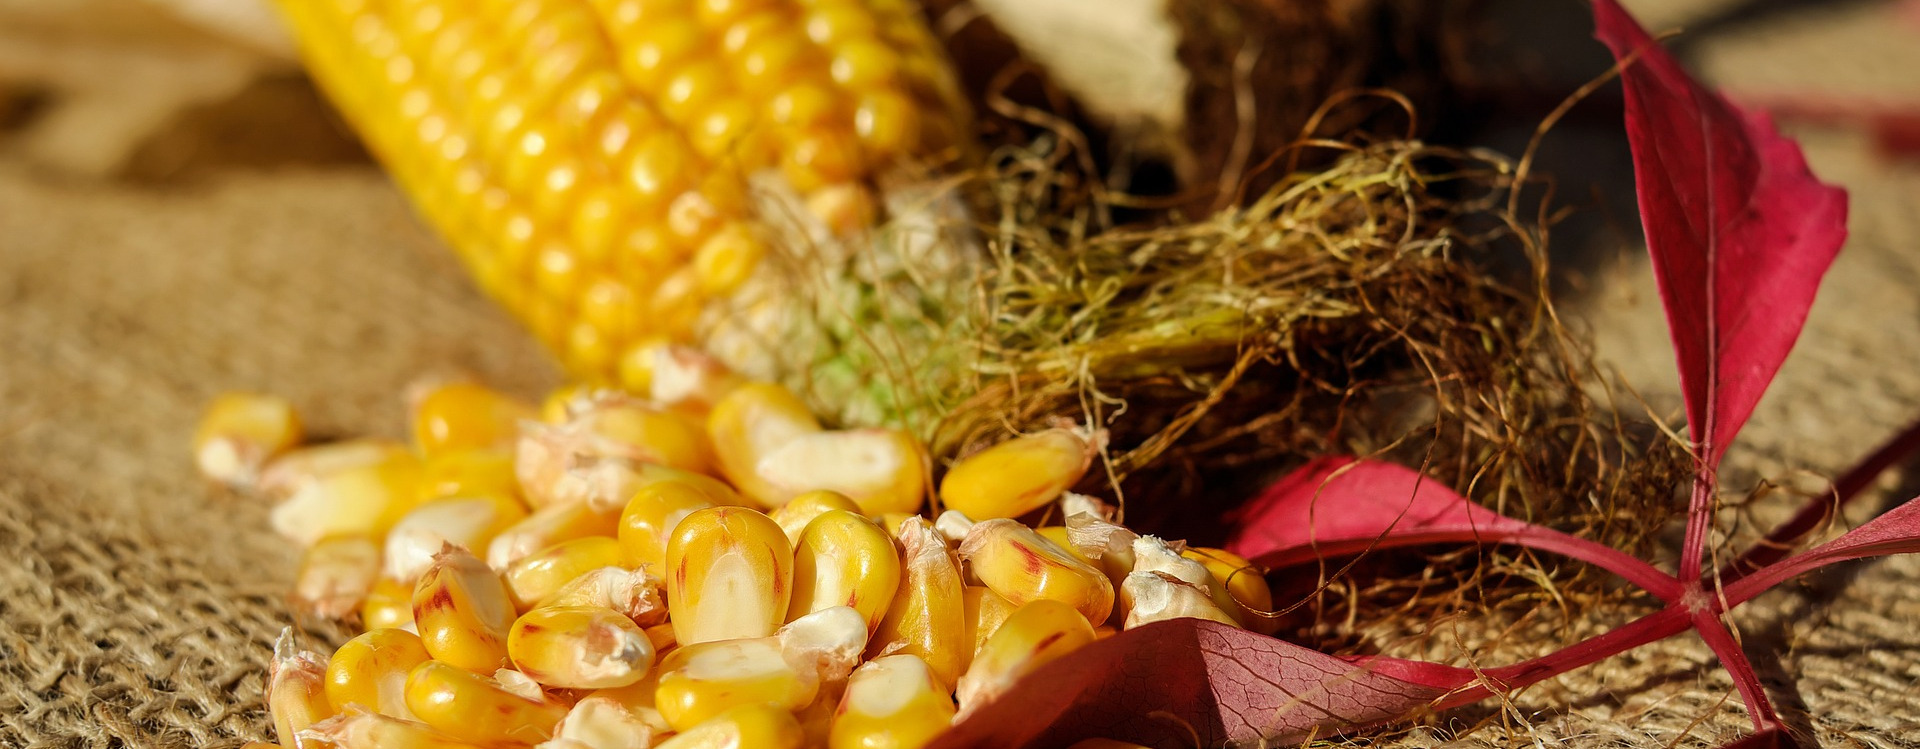 corn-kukurydza